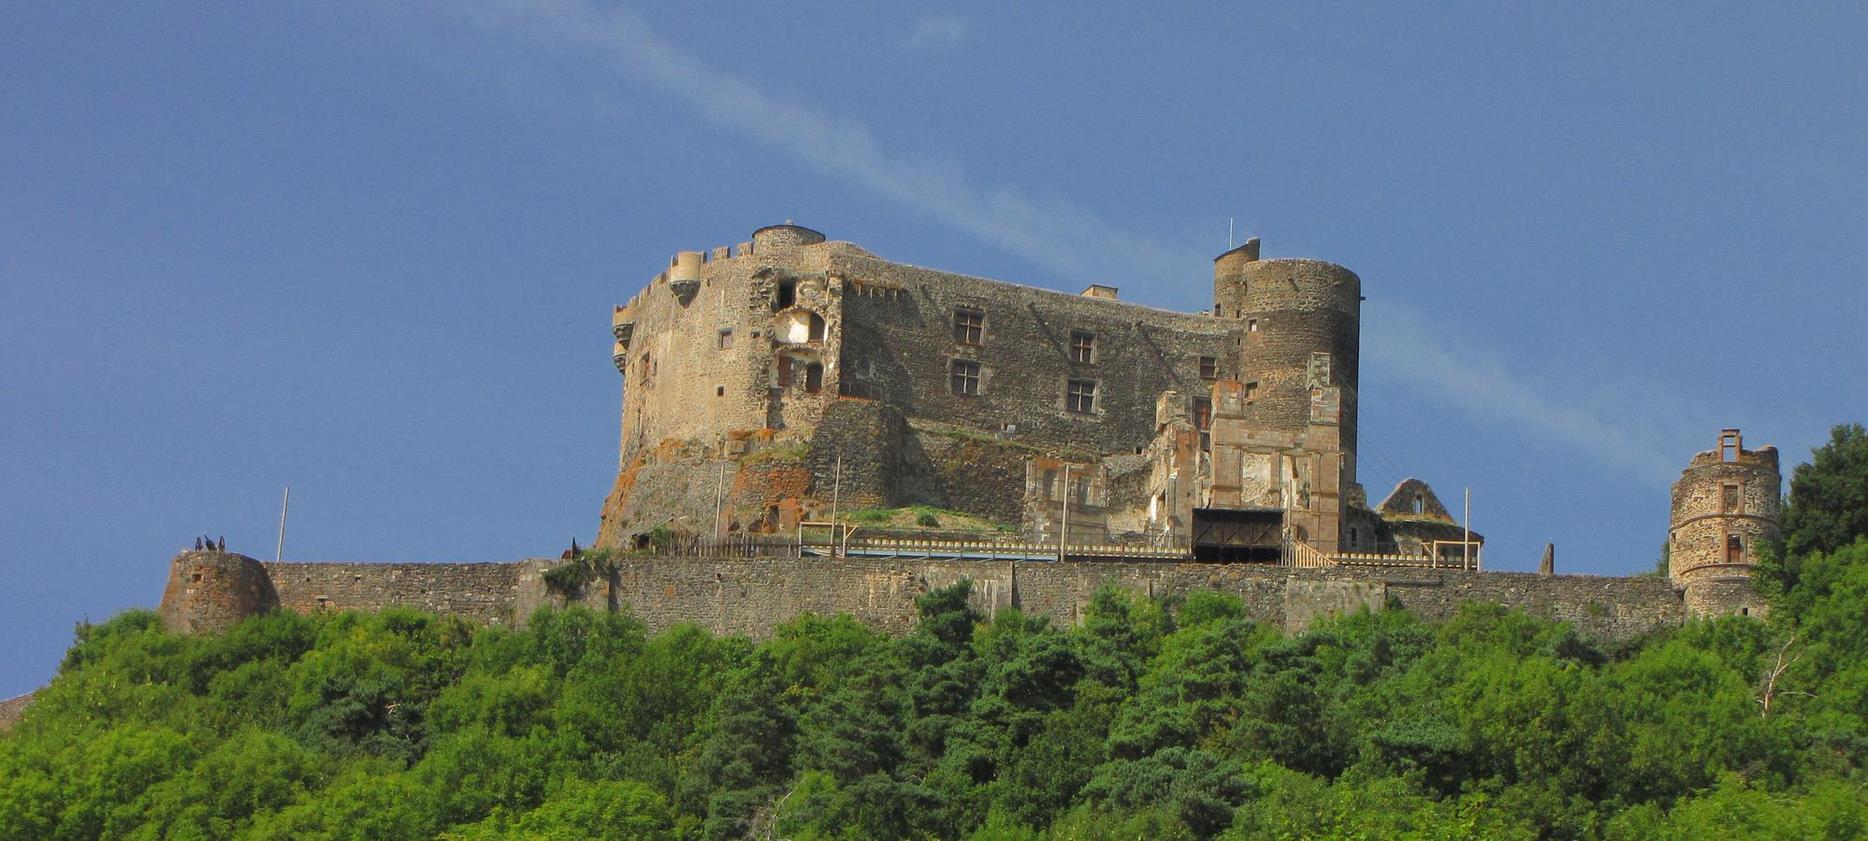 Super Besse - Chateau de Murol, chateau fort en Auvergne